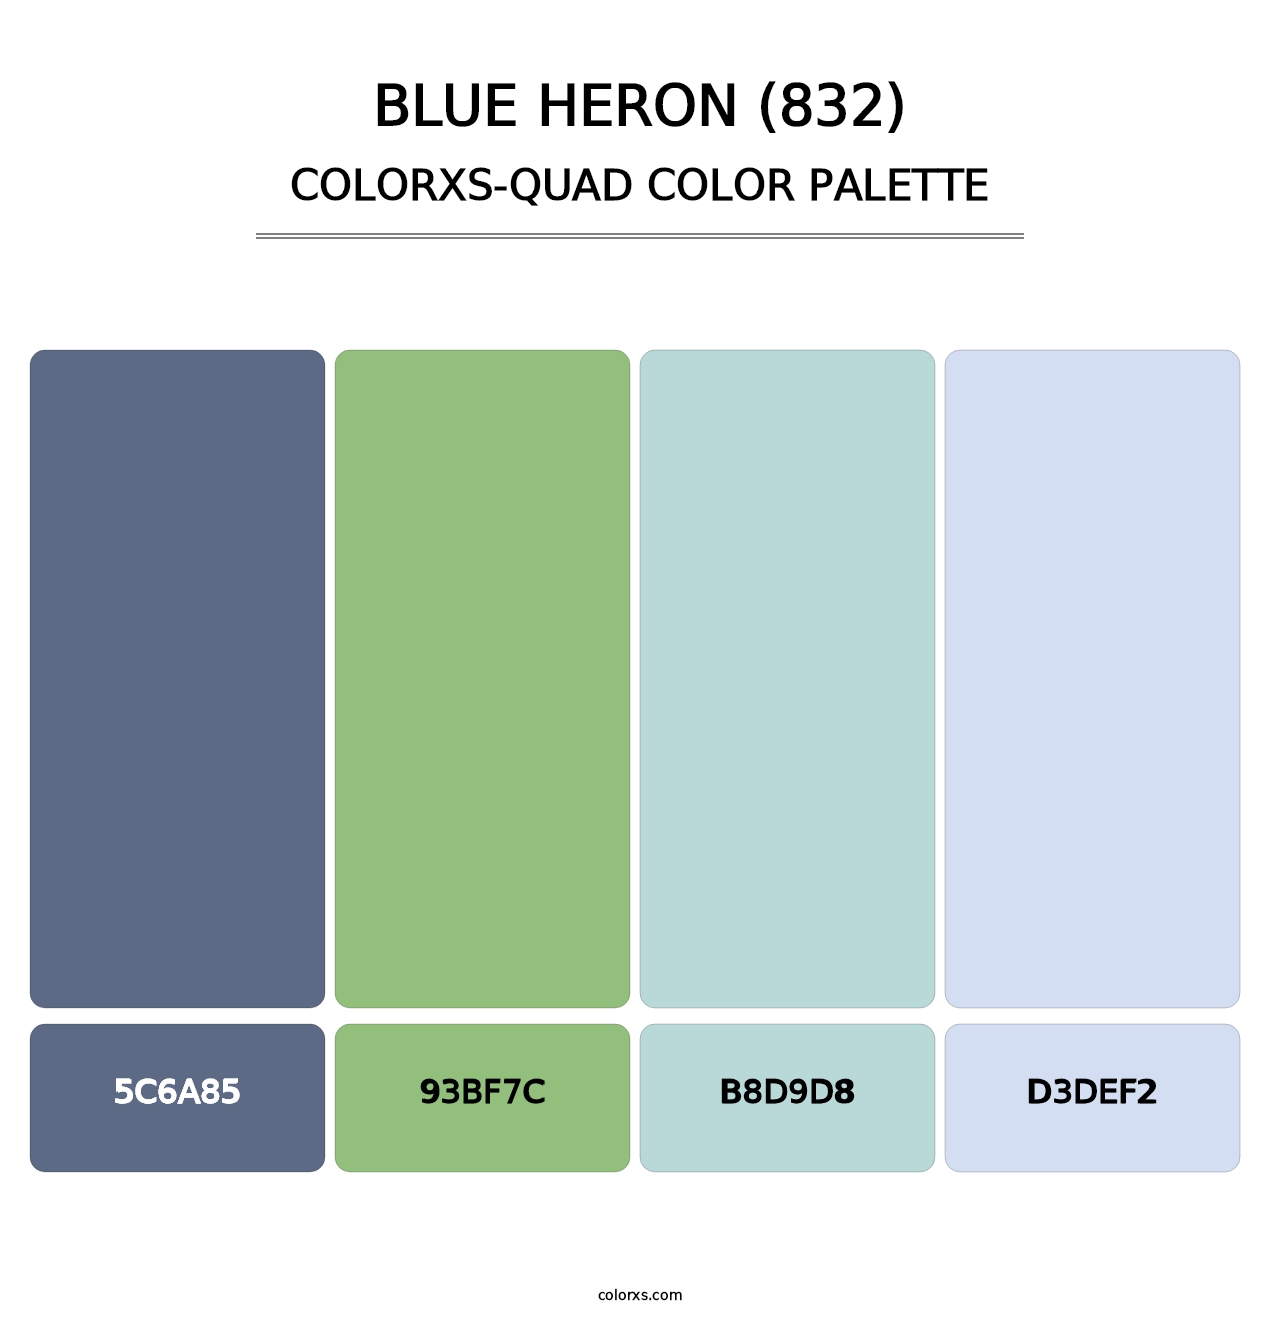 Blue Heron (832) - Colorxs Quad Palette